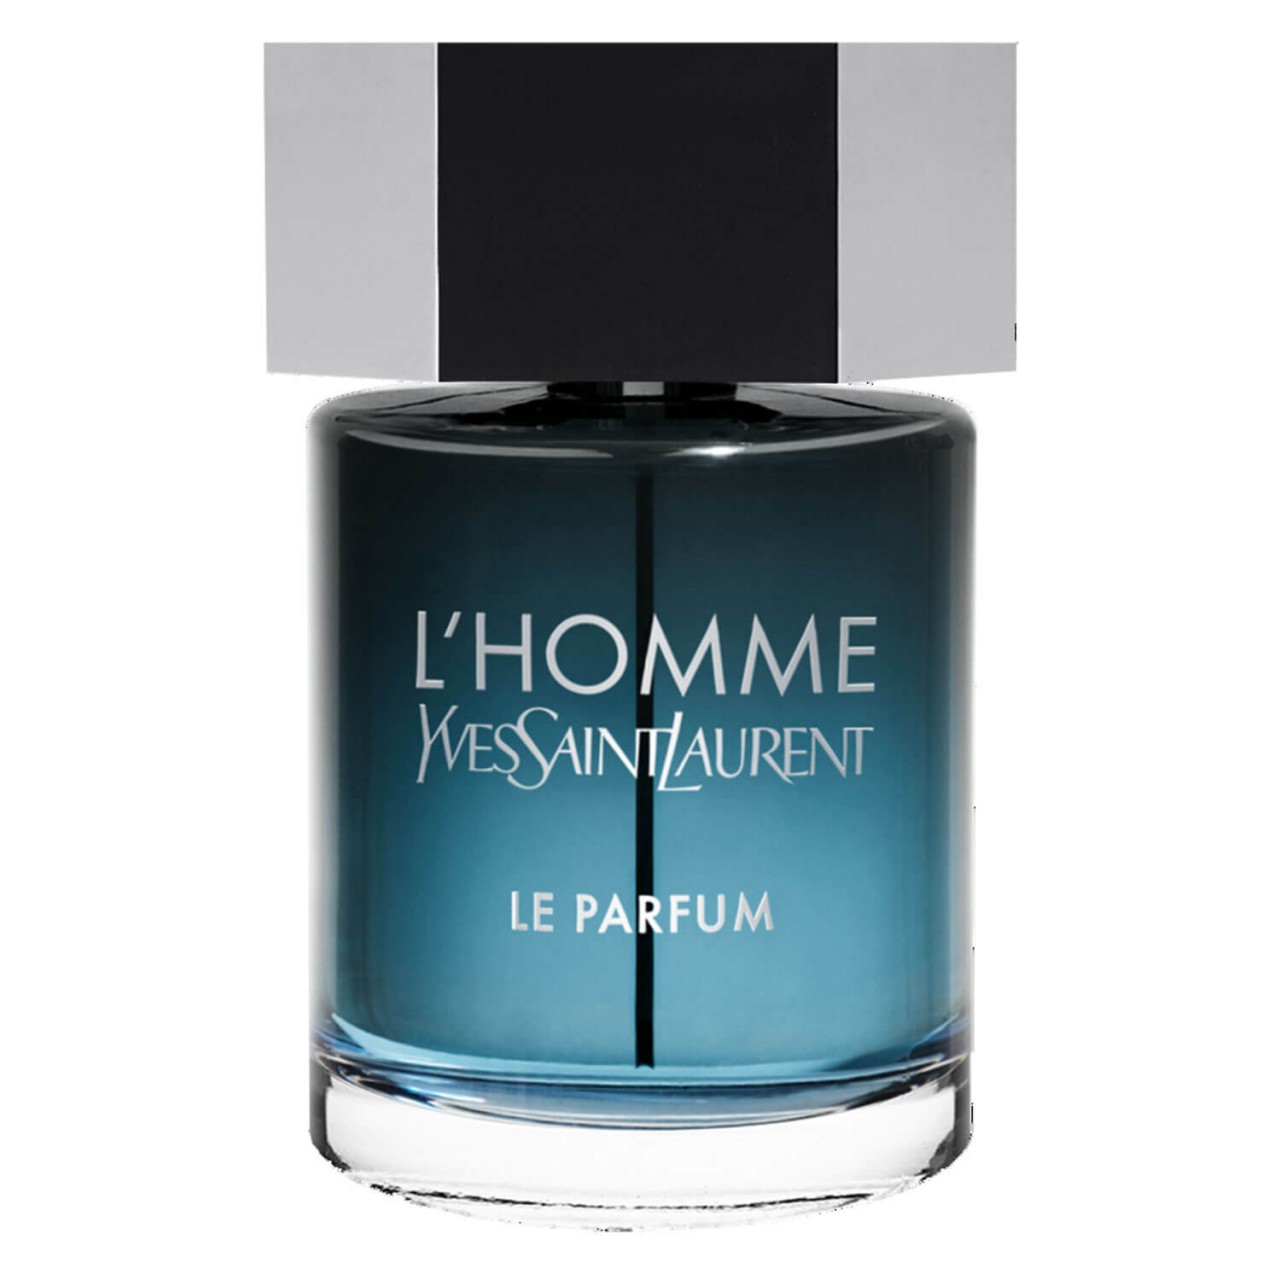 L'Homme - Le Parfum von Yves Saint Laurent